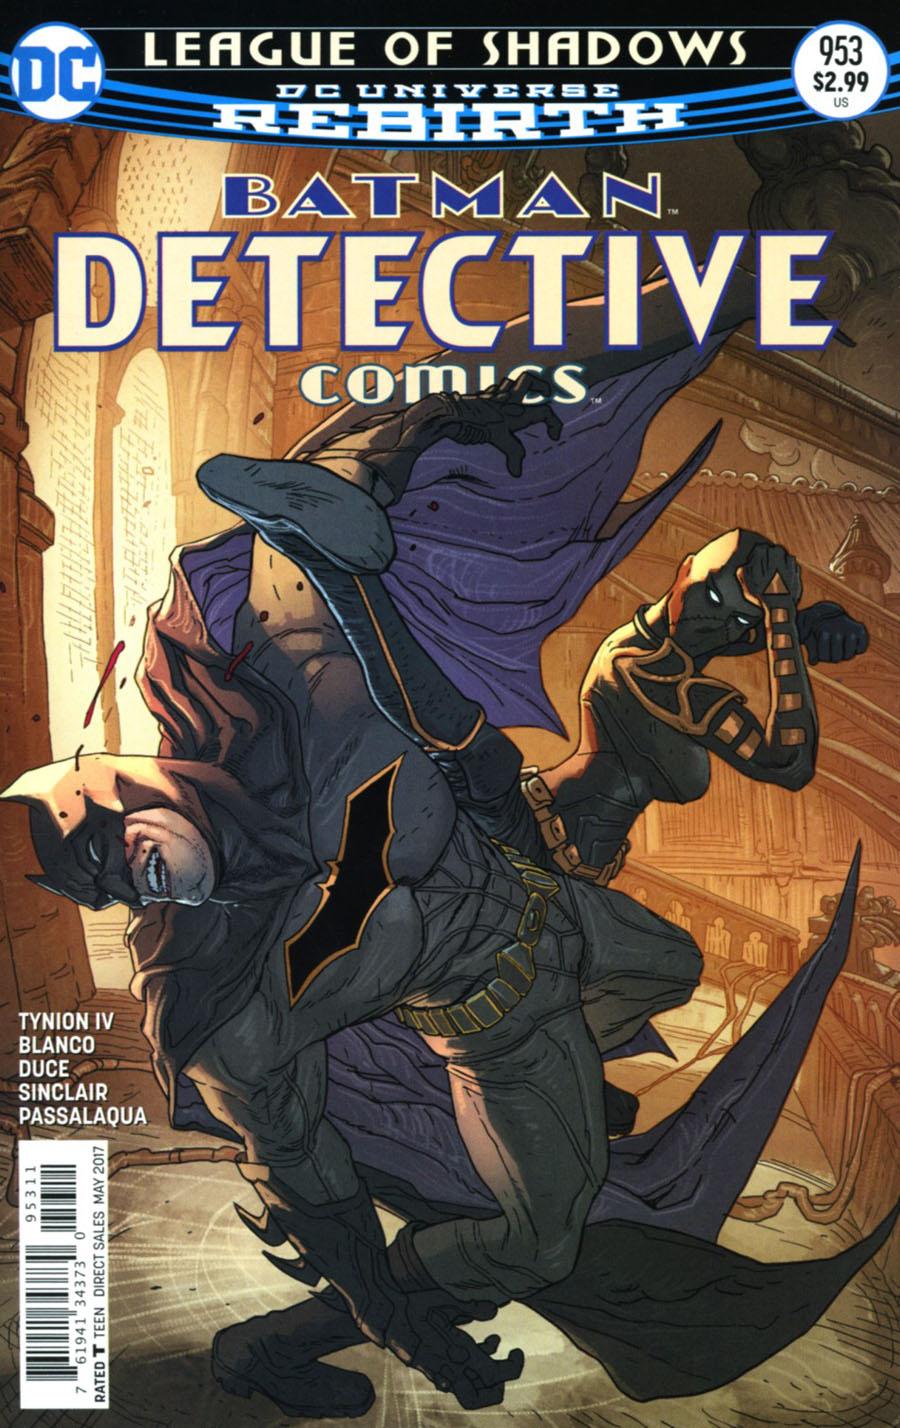 Detective Comics Vol. 2 #953